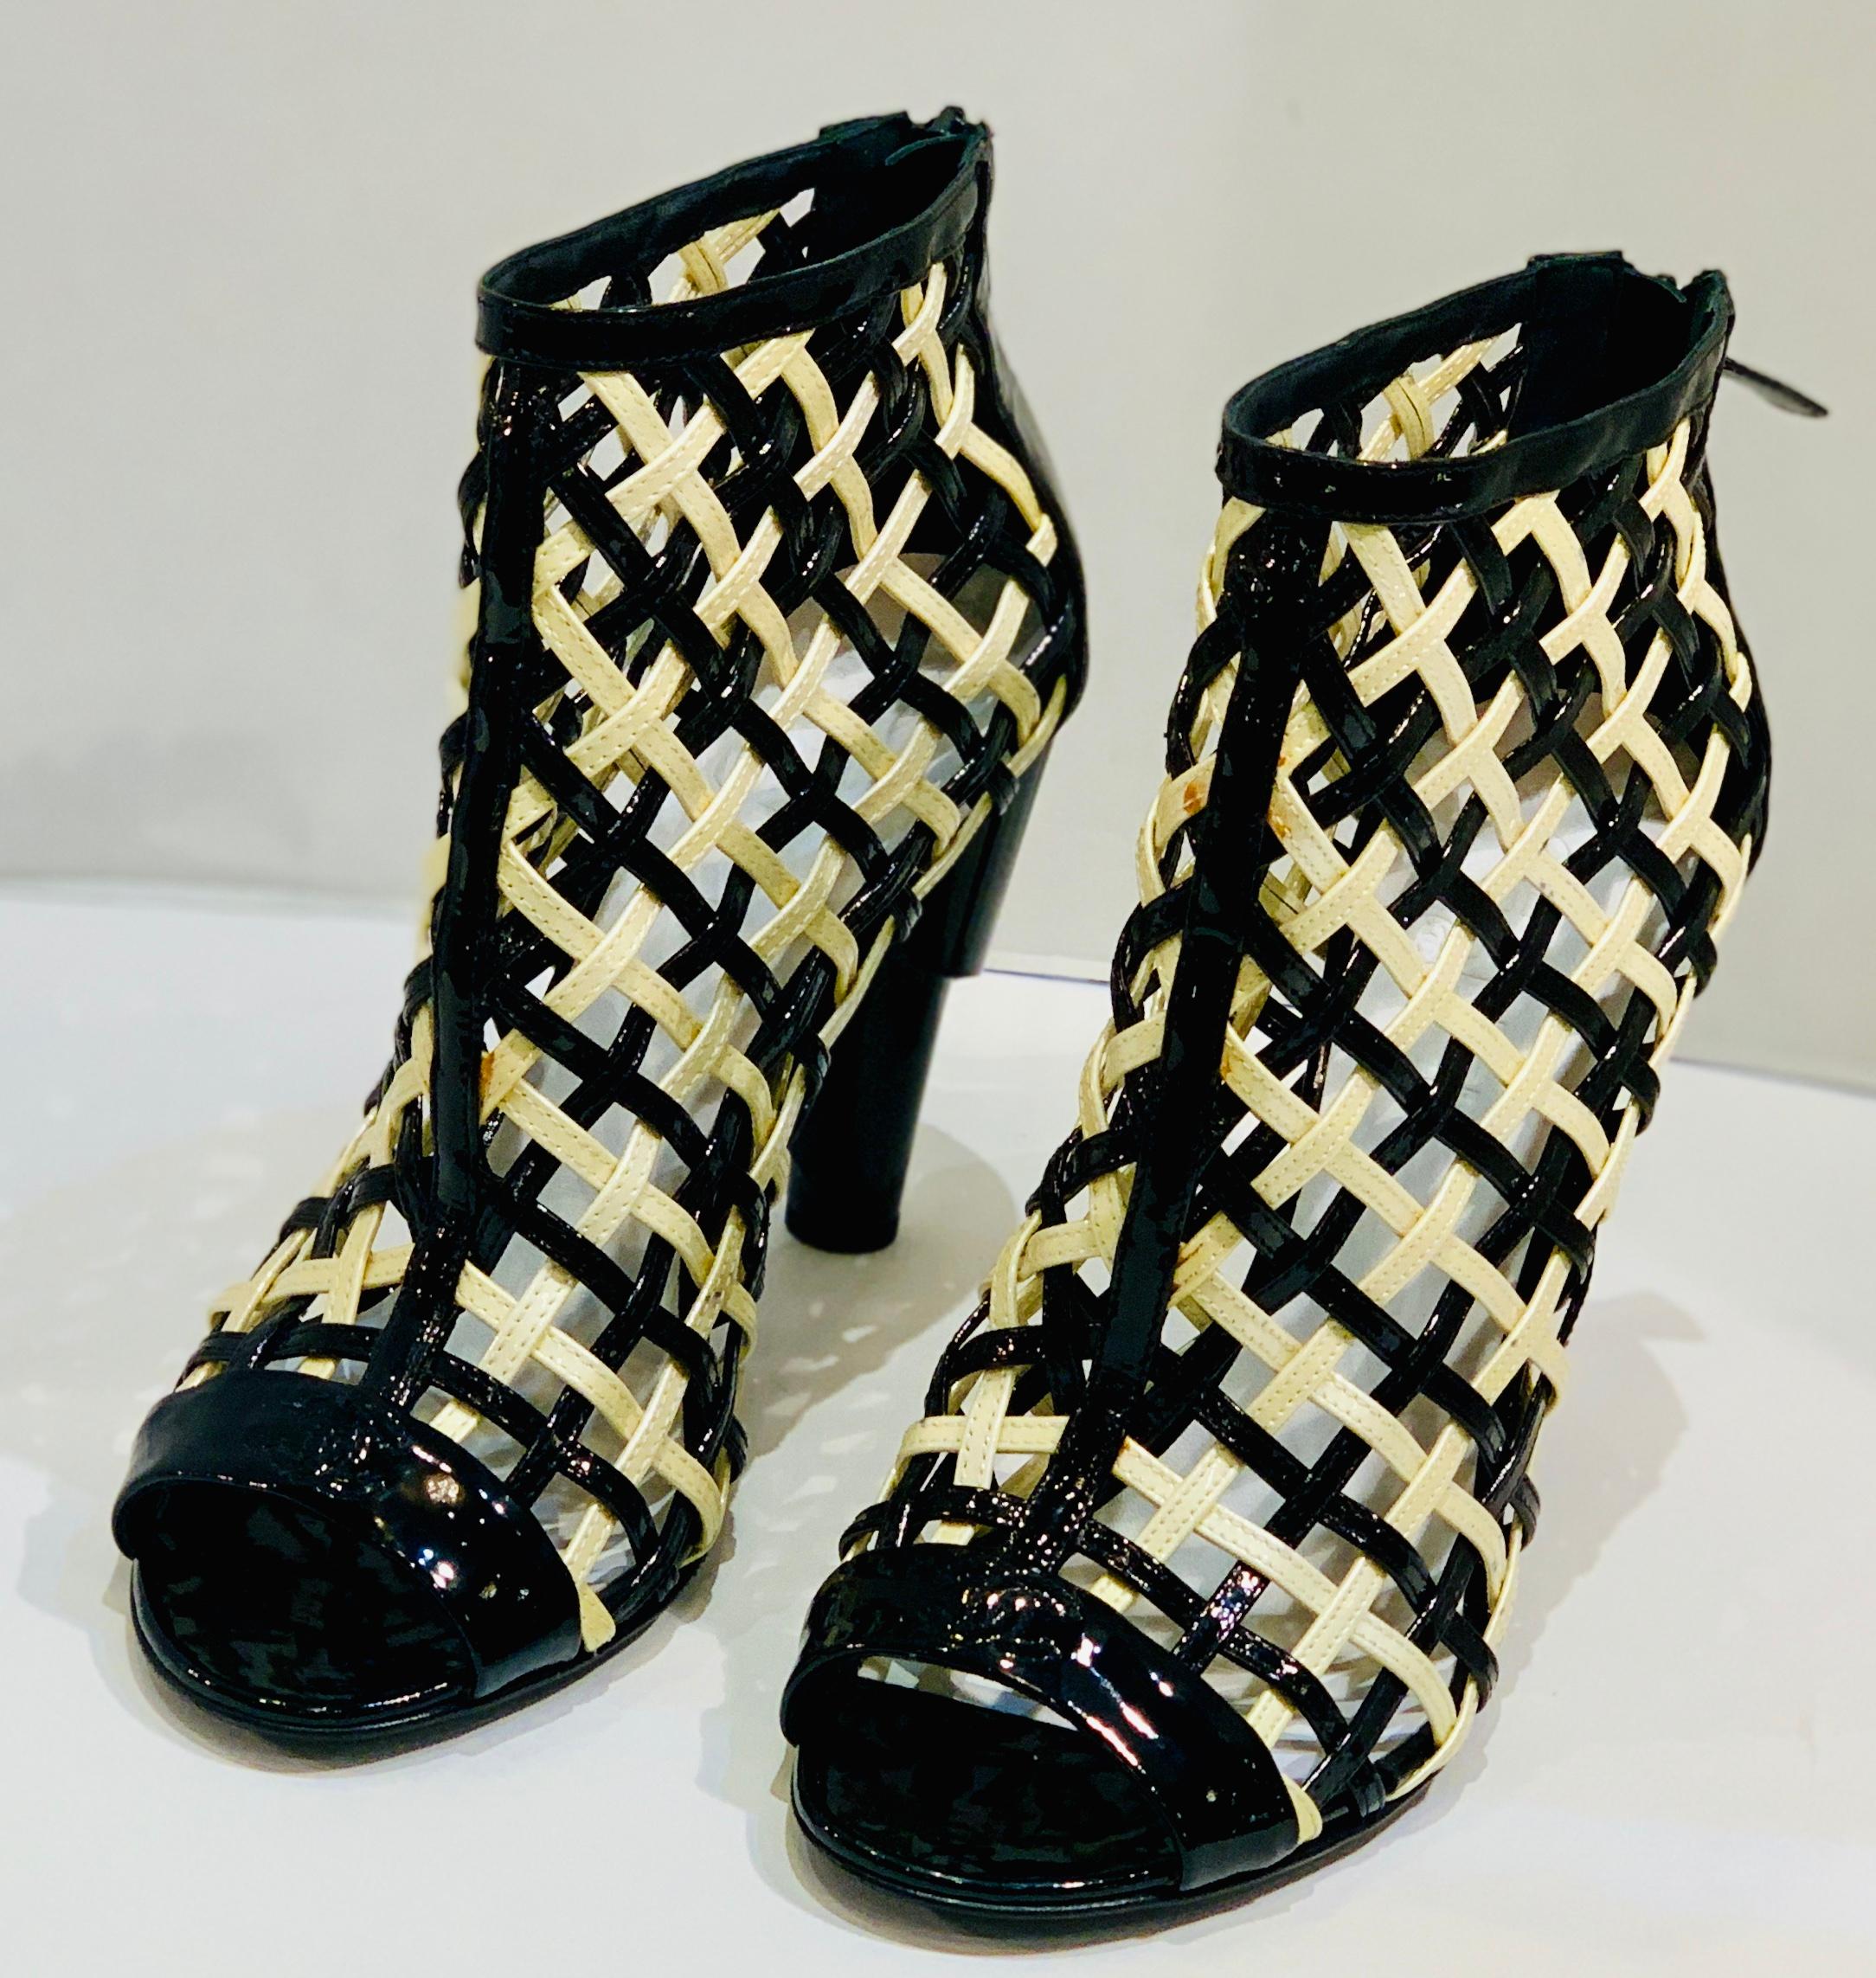 
Difficile à trouver taille 11 ou 41, Chaussures Chanel Cage Peep Toe Booties en cuir verni noir et blanc de la collection défilé printemps 2015 de la légendaire marque de luxe Chanel. Ces bottines à la pointe de la mode sont en cuir verni brillant,